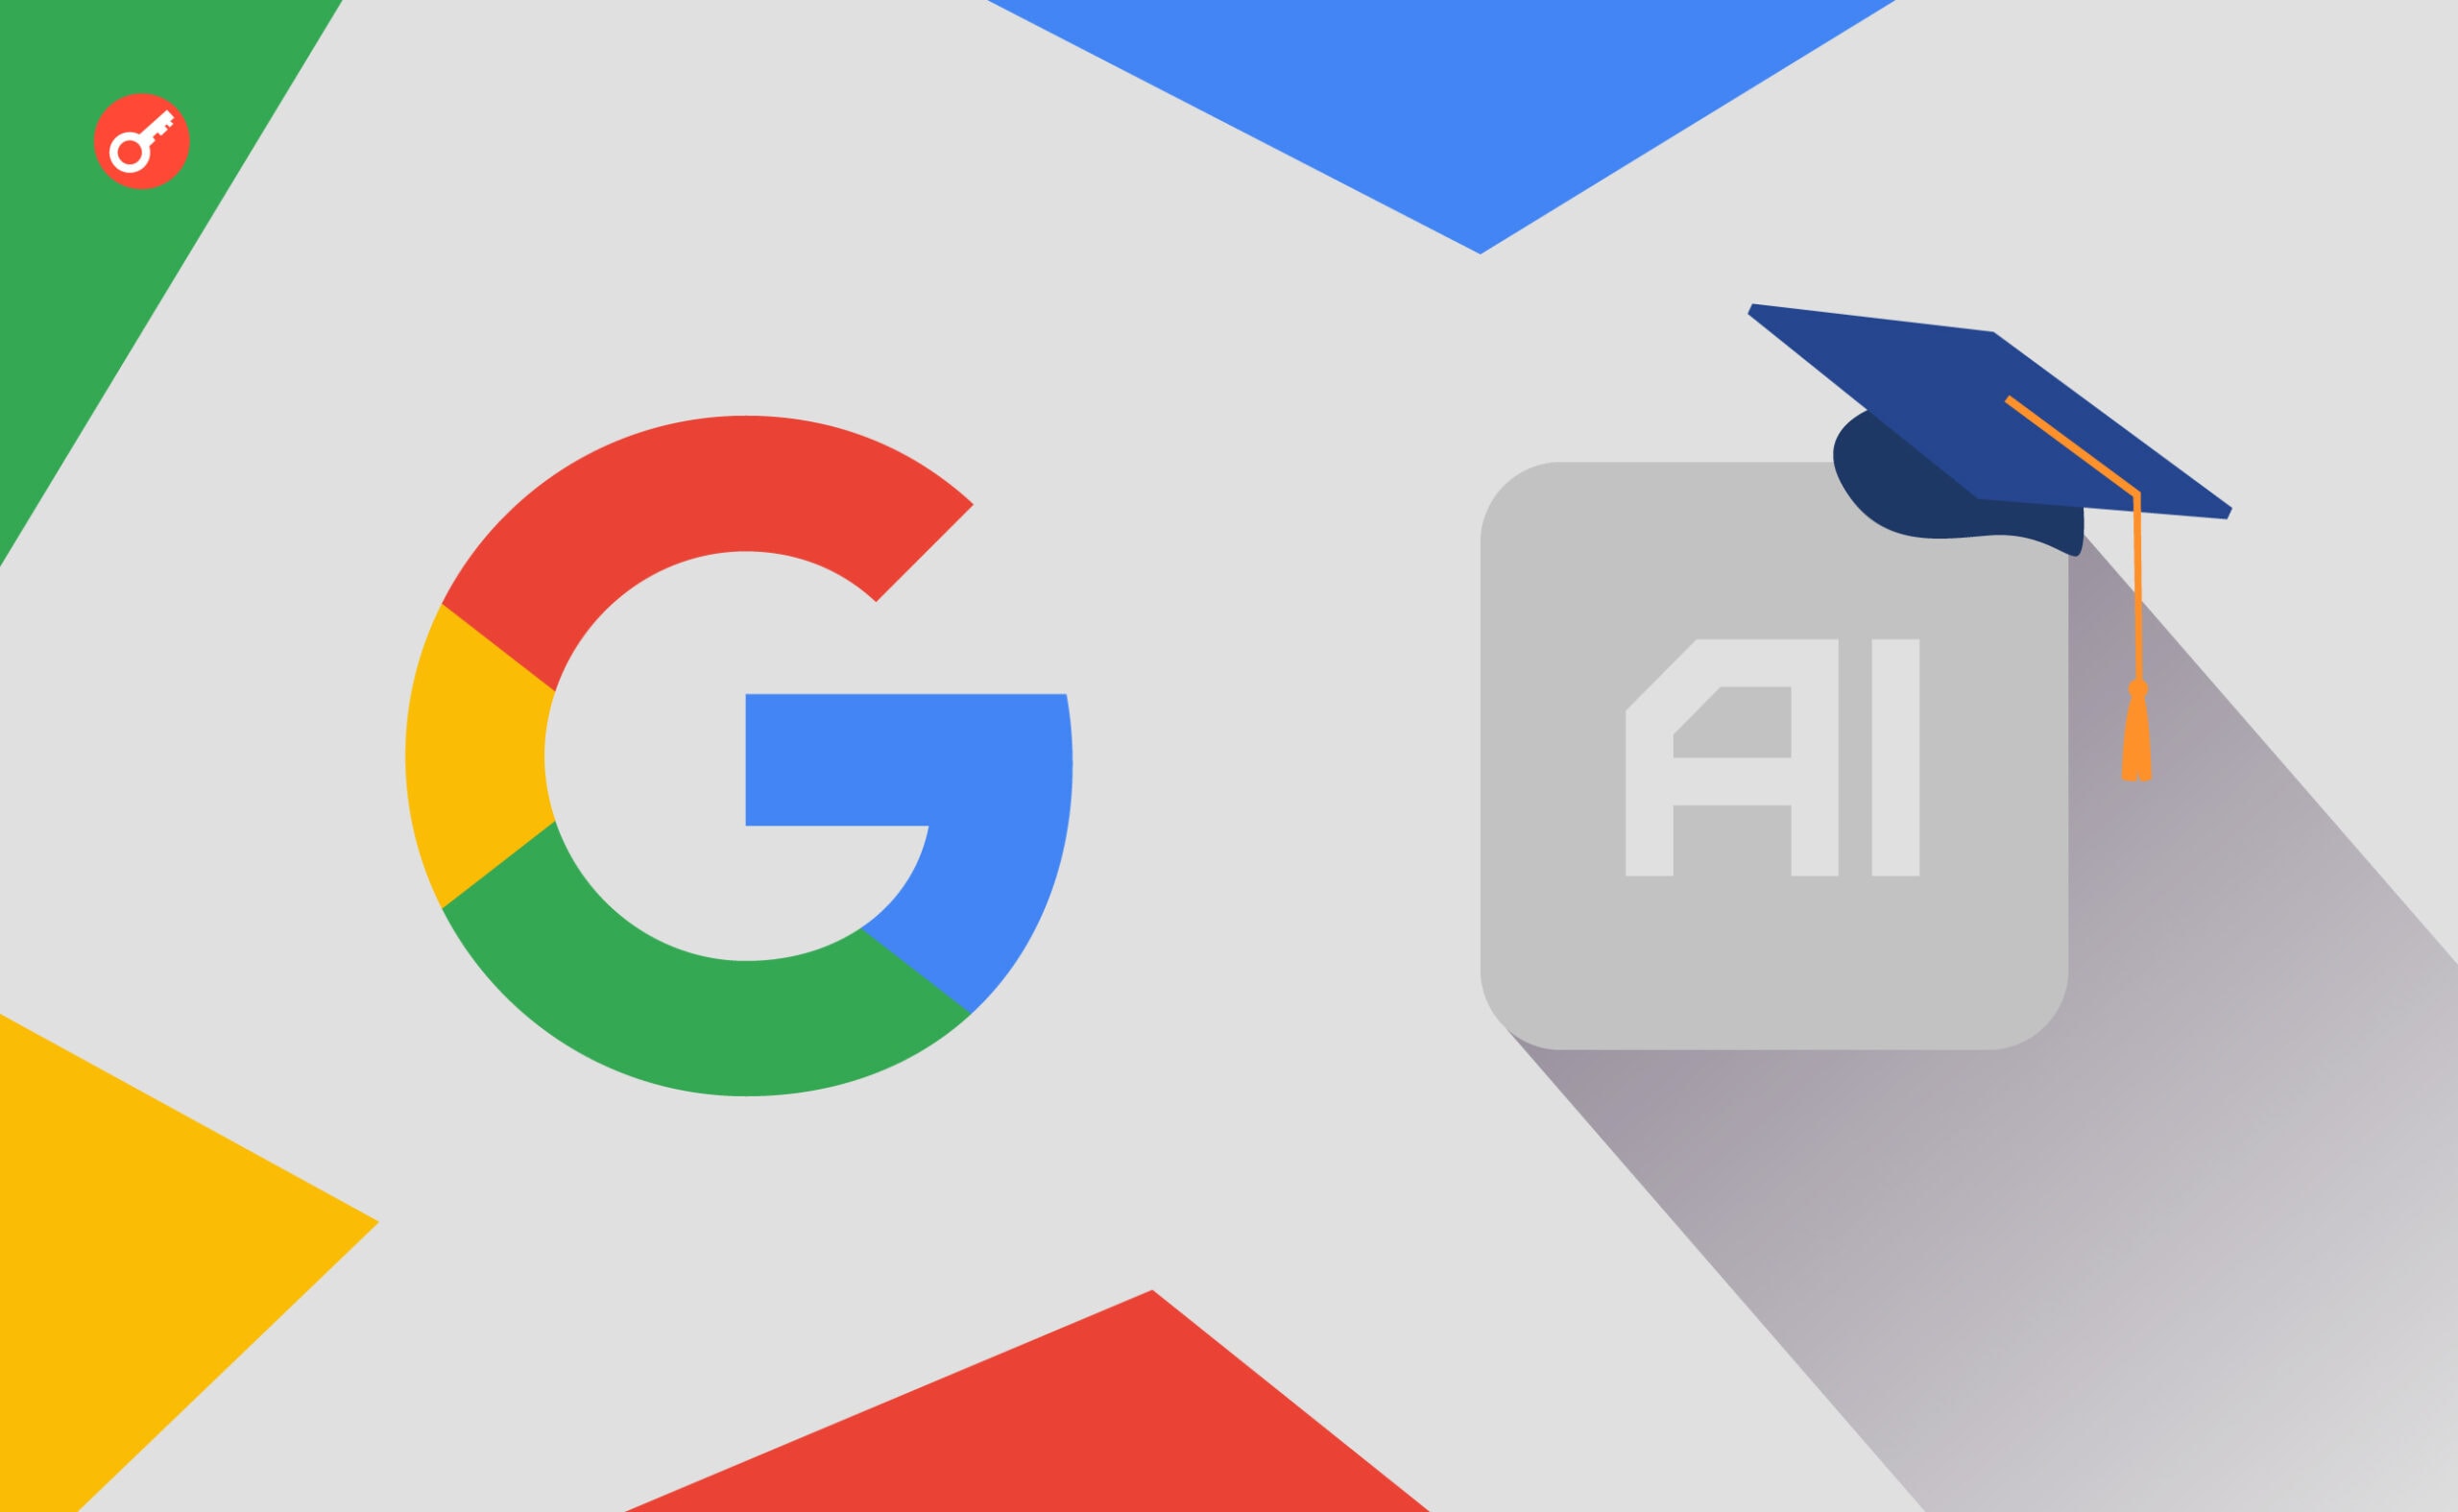 Минцифры и Google запускают бесплатный курс по основам AI/ML. Заглавный коллаж новости.